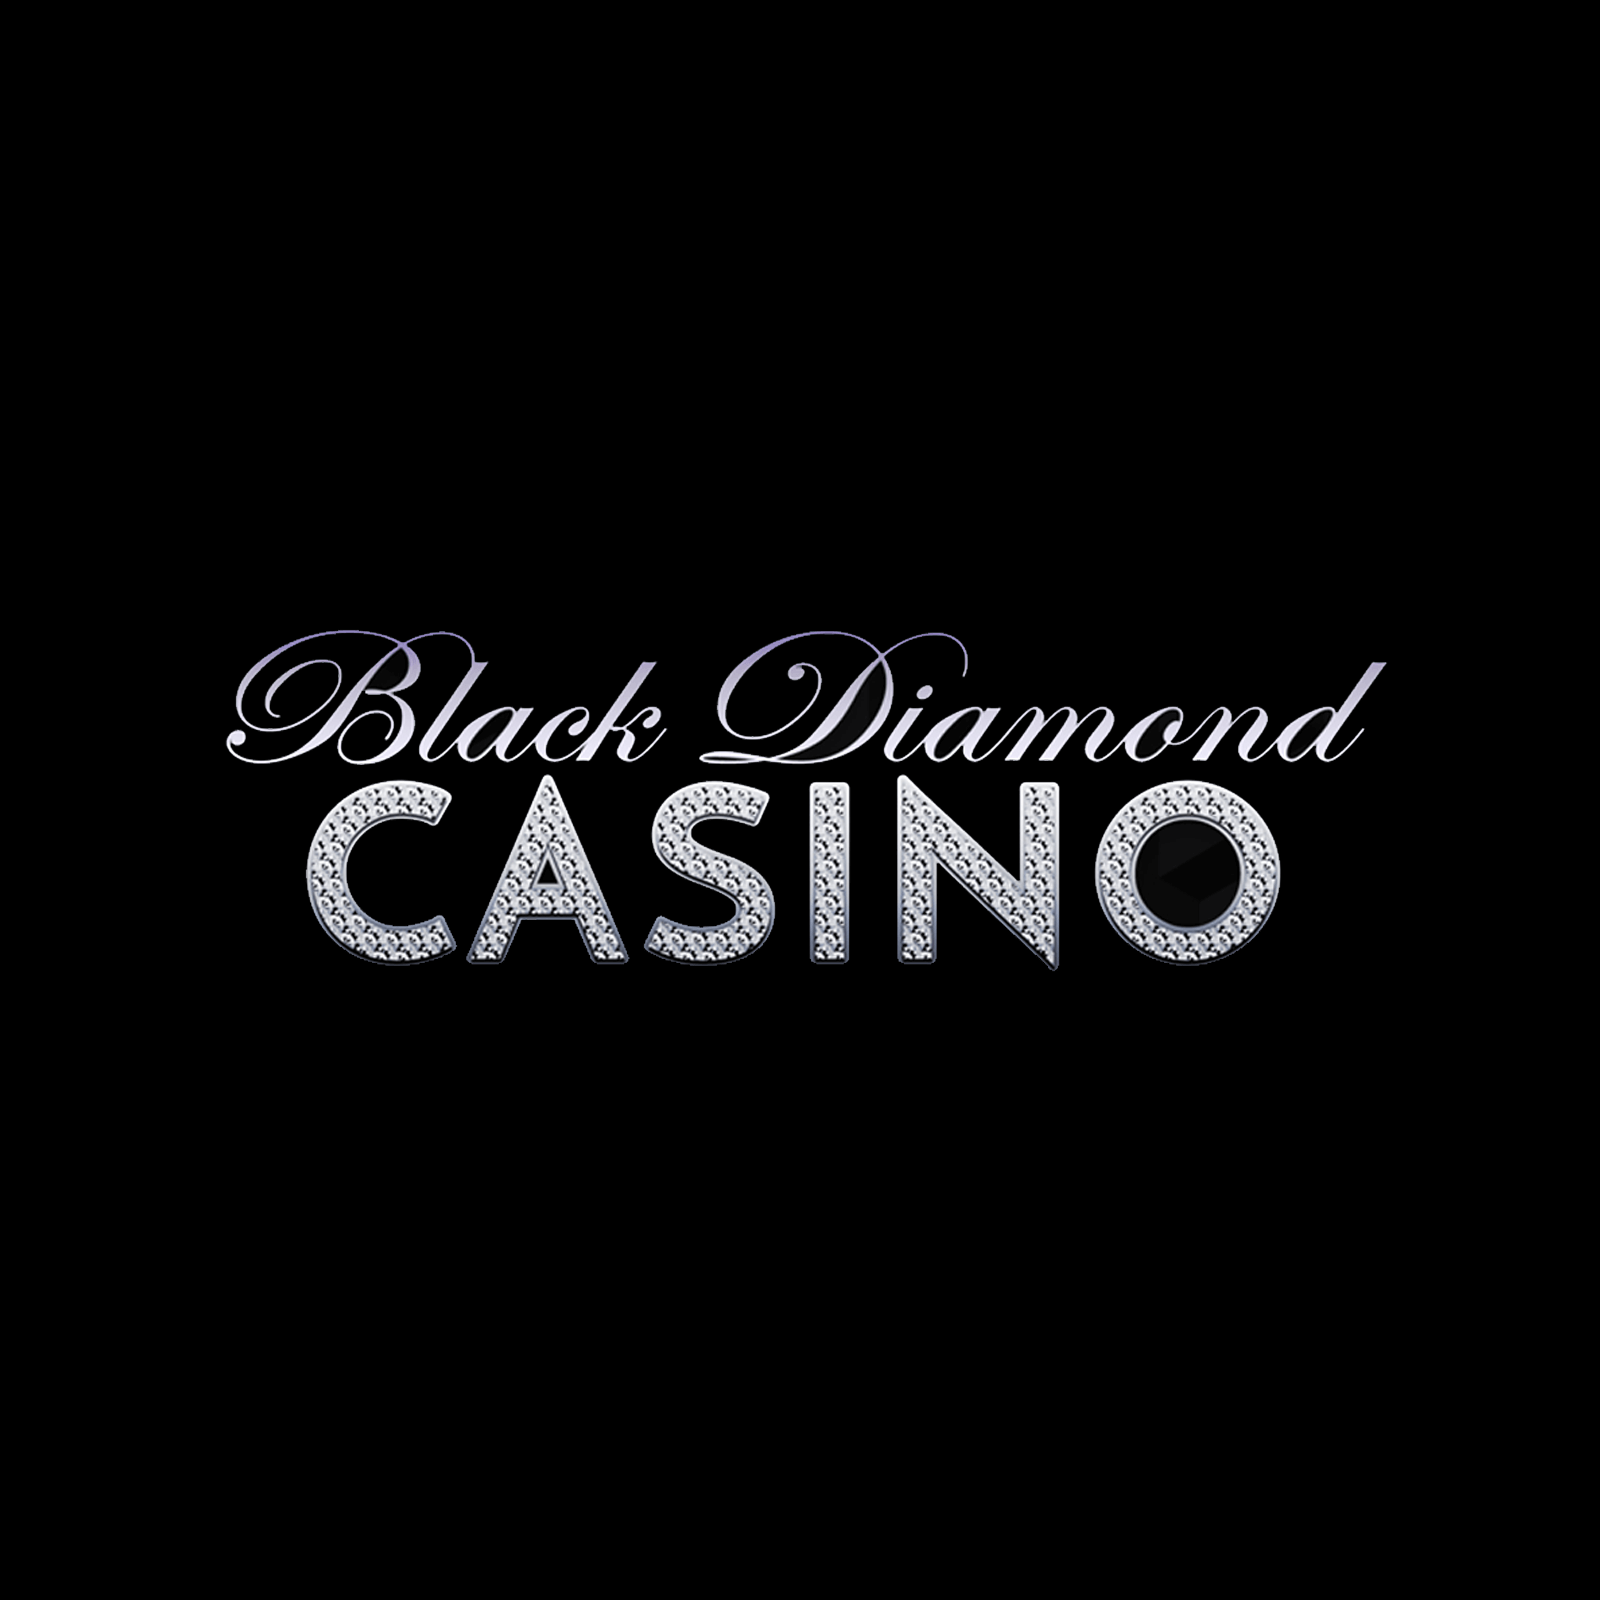 Blackdiamond Casino